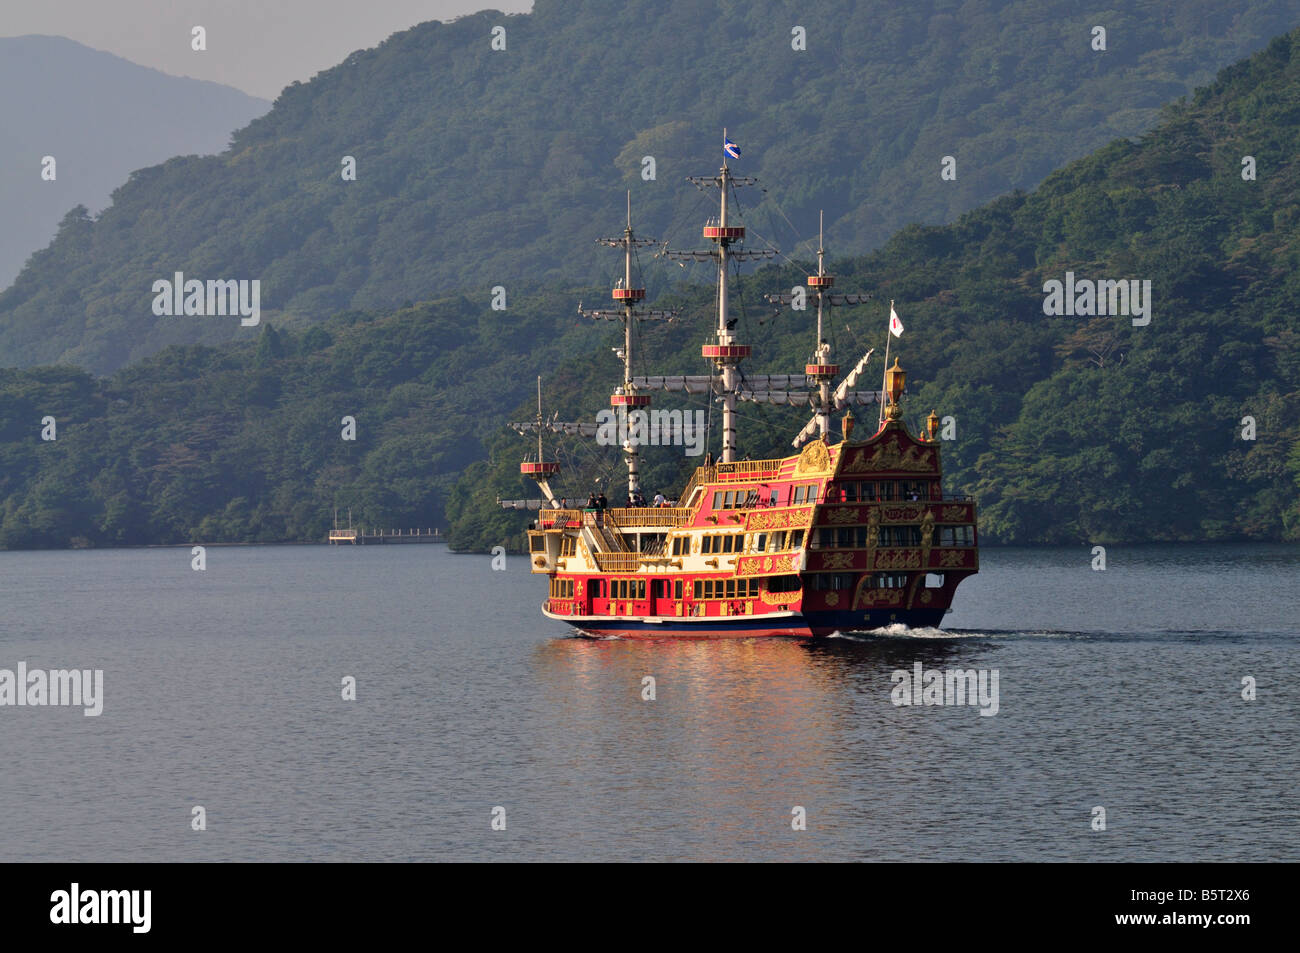 Hakone Sightseeing Cruise ship 'Royal' sailing on Lake Ashi, Hakone, Japan Stock Photo